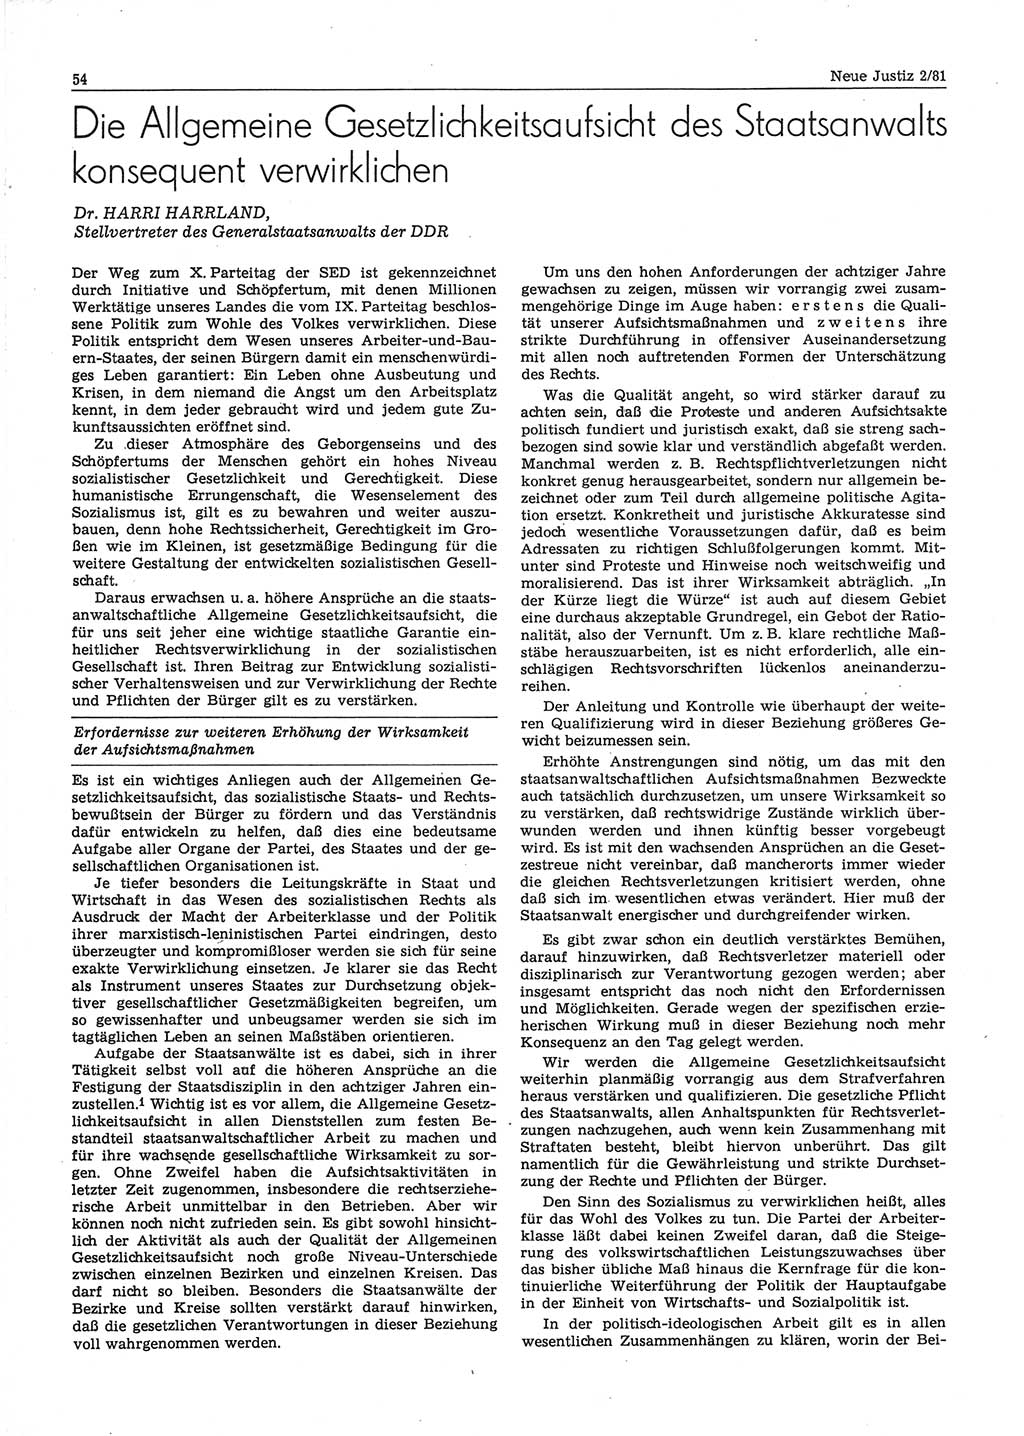 Neue Justiz (NJ), Zeitschrift für sozialistisches Recht und Gesetzlichkeit [Deutsche Demokratische Republik (DDR)], 35. Jahrgang 1981, Seite 54 (NJ DDR 1981, S. 54)